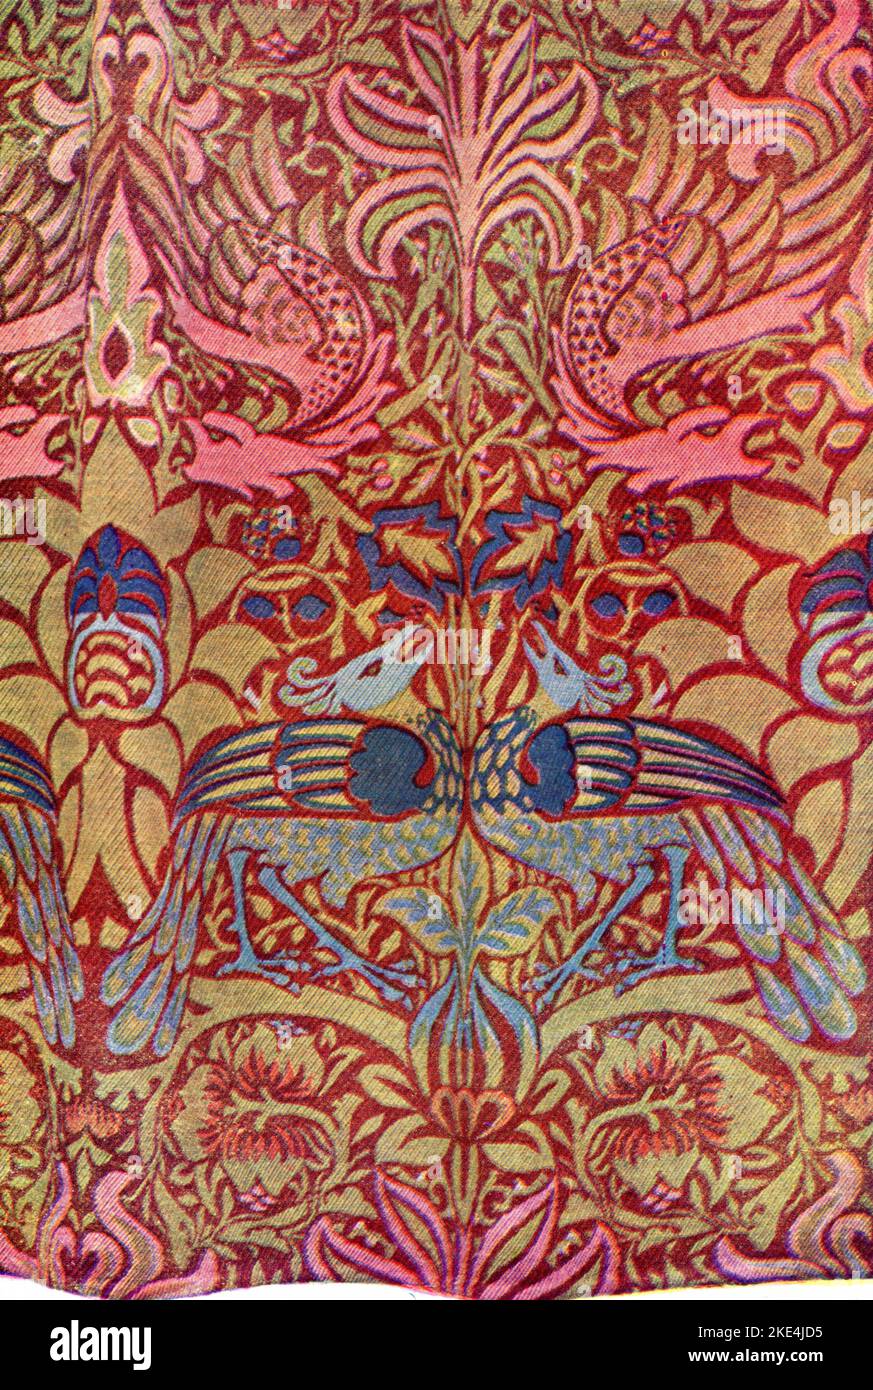 „Pfau Und Drache“, 1878. Wollstoff von William Morris. Produziert von Morris & Co. William Morris (1834-1896), war ein englischer Textildesigner, Künstler und Schriftsteller. Der prominente Sozialist war eng mit der Pre-Raphaelite Brotherhood und der englischen Arts and Crafts Movement verbunden. Stockfoto